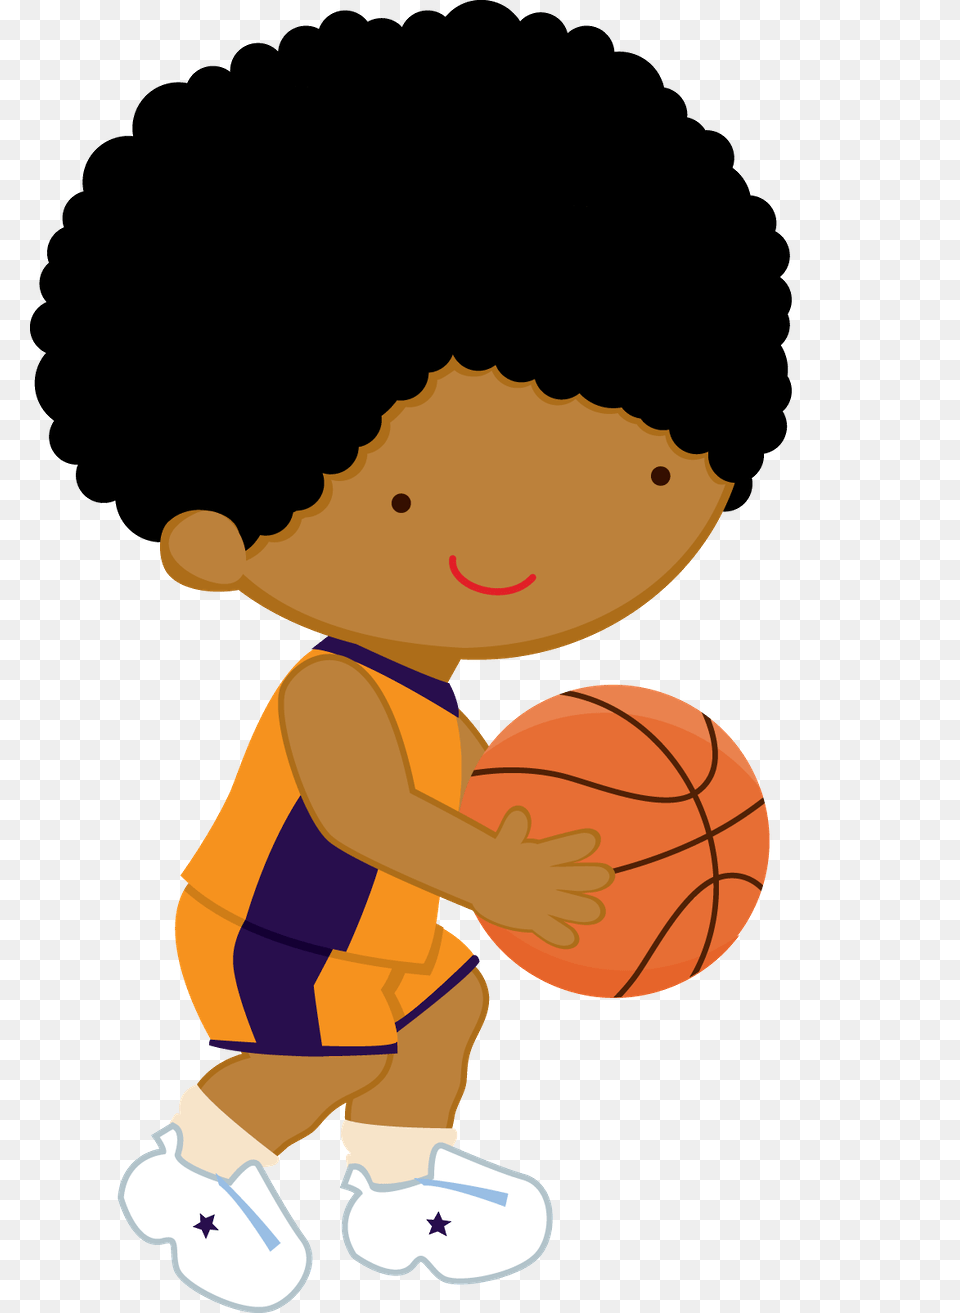 Zwd White Star, Baby, Ball, Basketball, Basketball (ball) Png